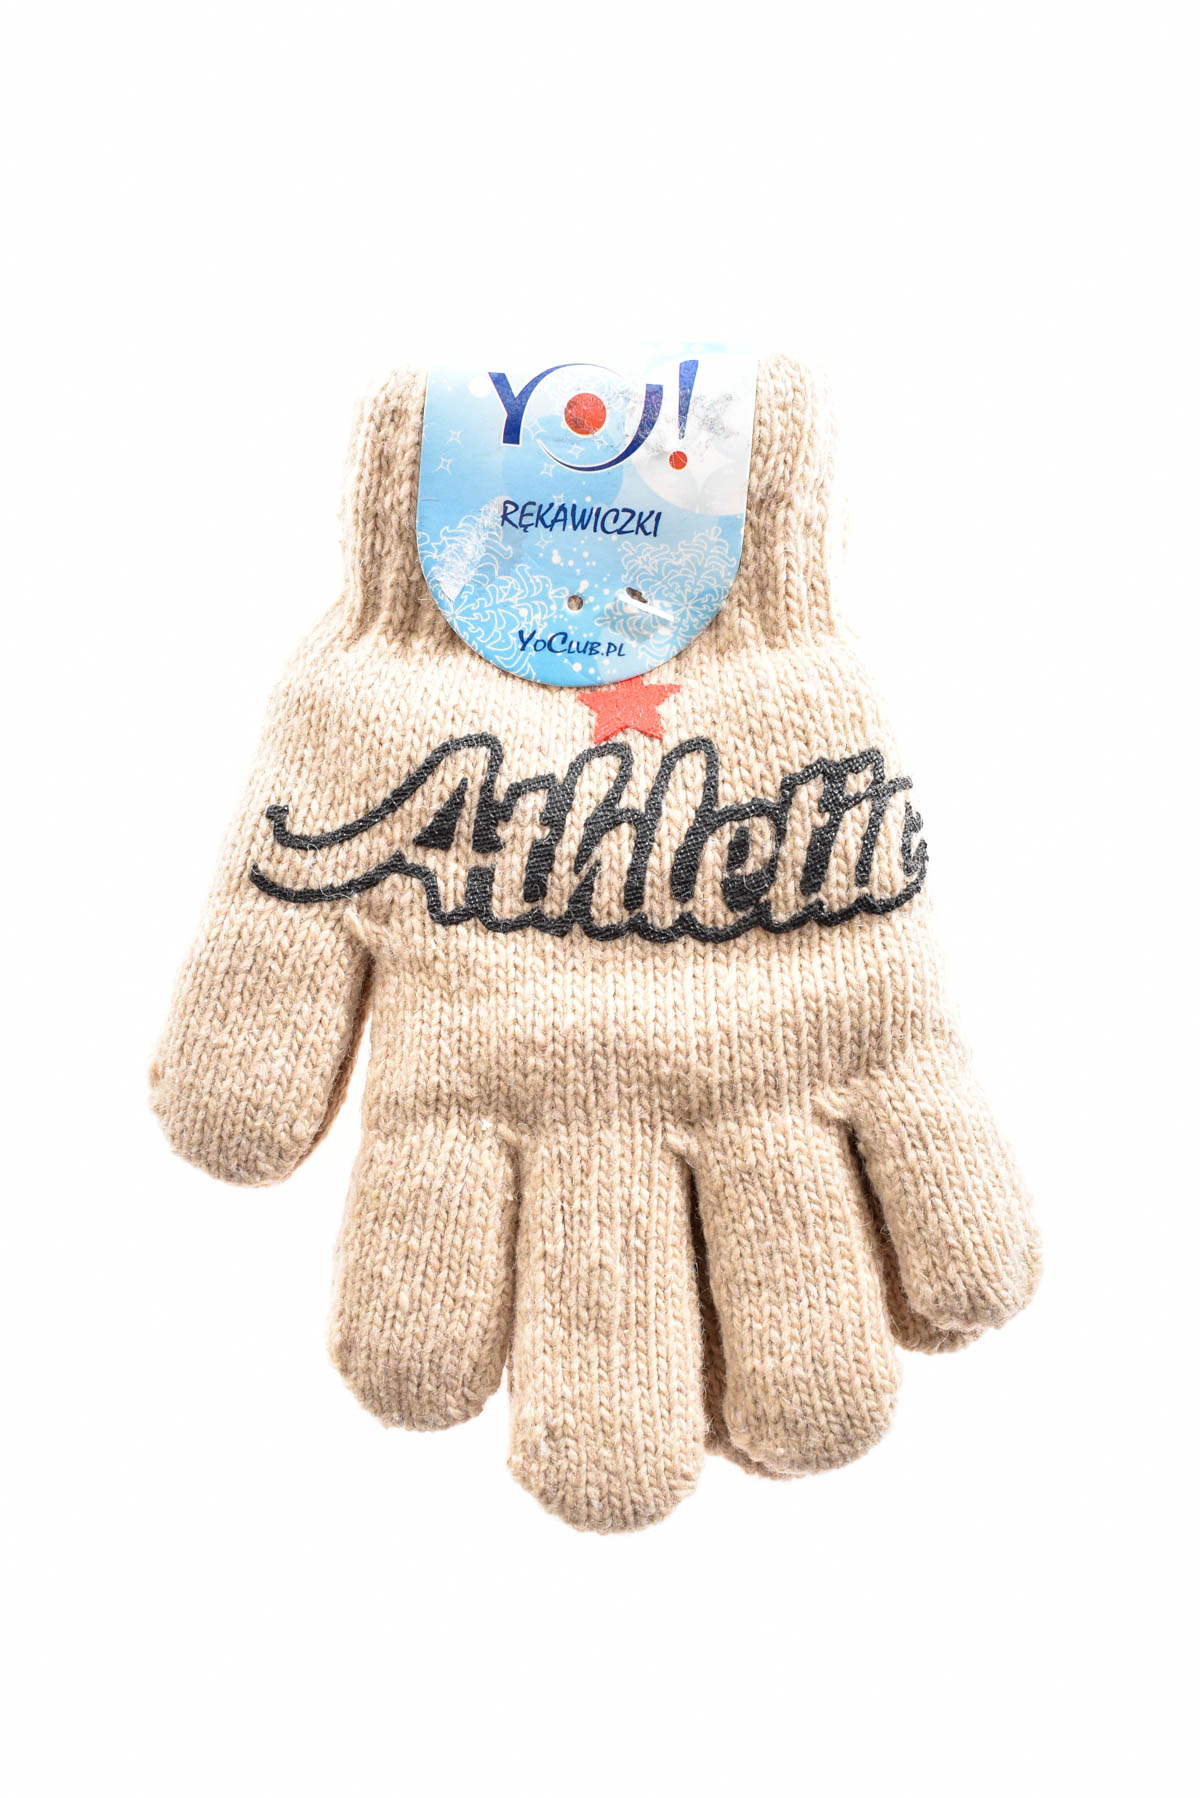 Παιδικά γάντια - Yo! club - 3